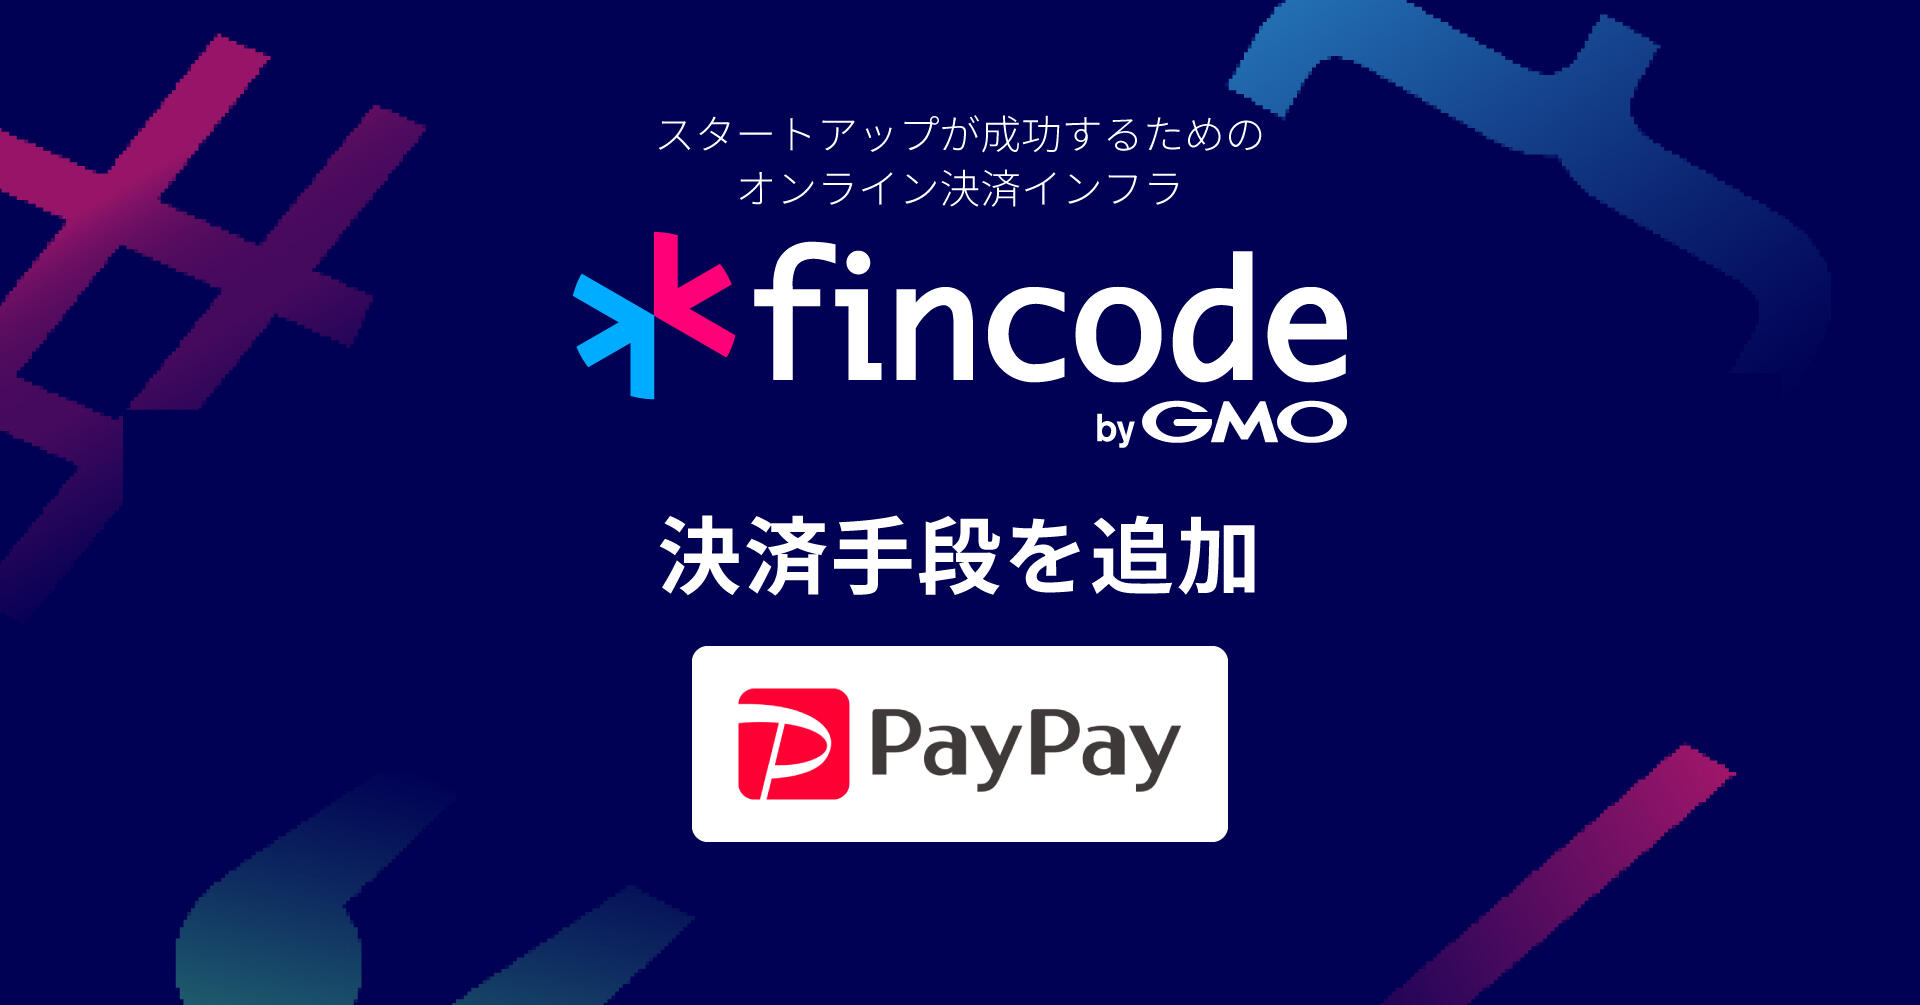 スタートアップ向けオンライン決済インフラ「fincode byGMO」、決済手段に「PayPay」を追加